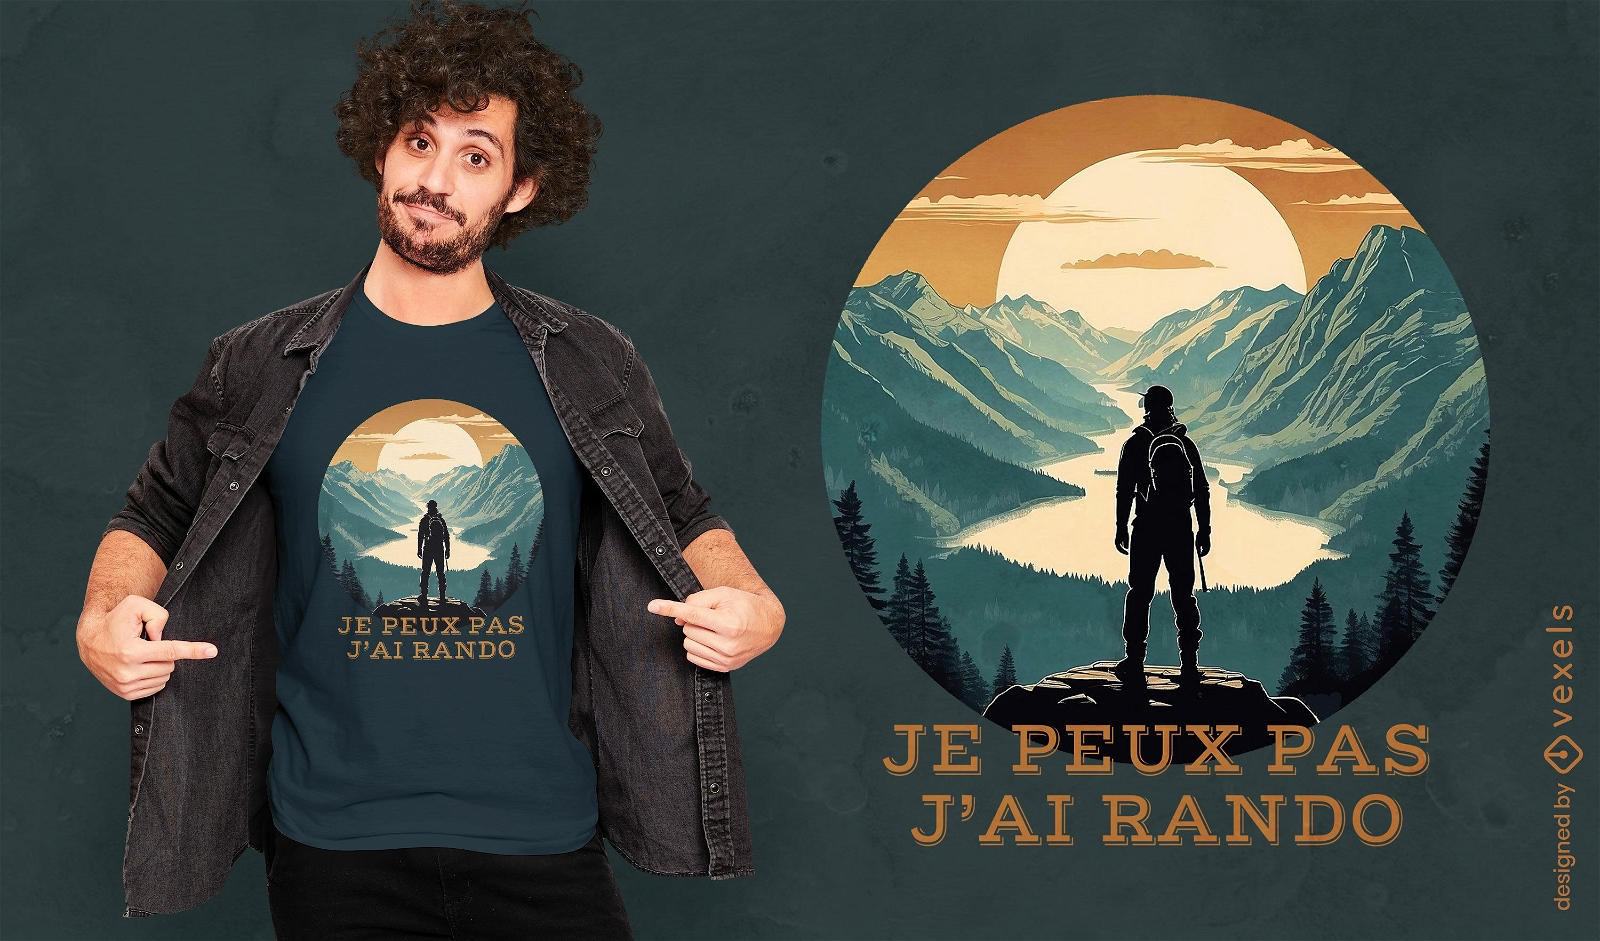 Design inspirador de camisetas para caminhadas nas montanhas